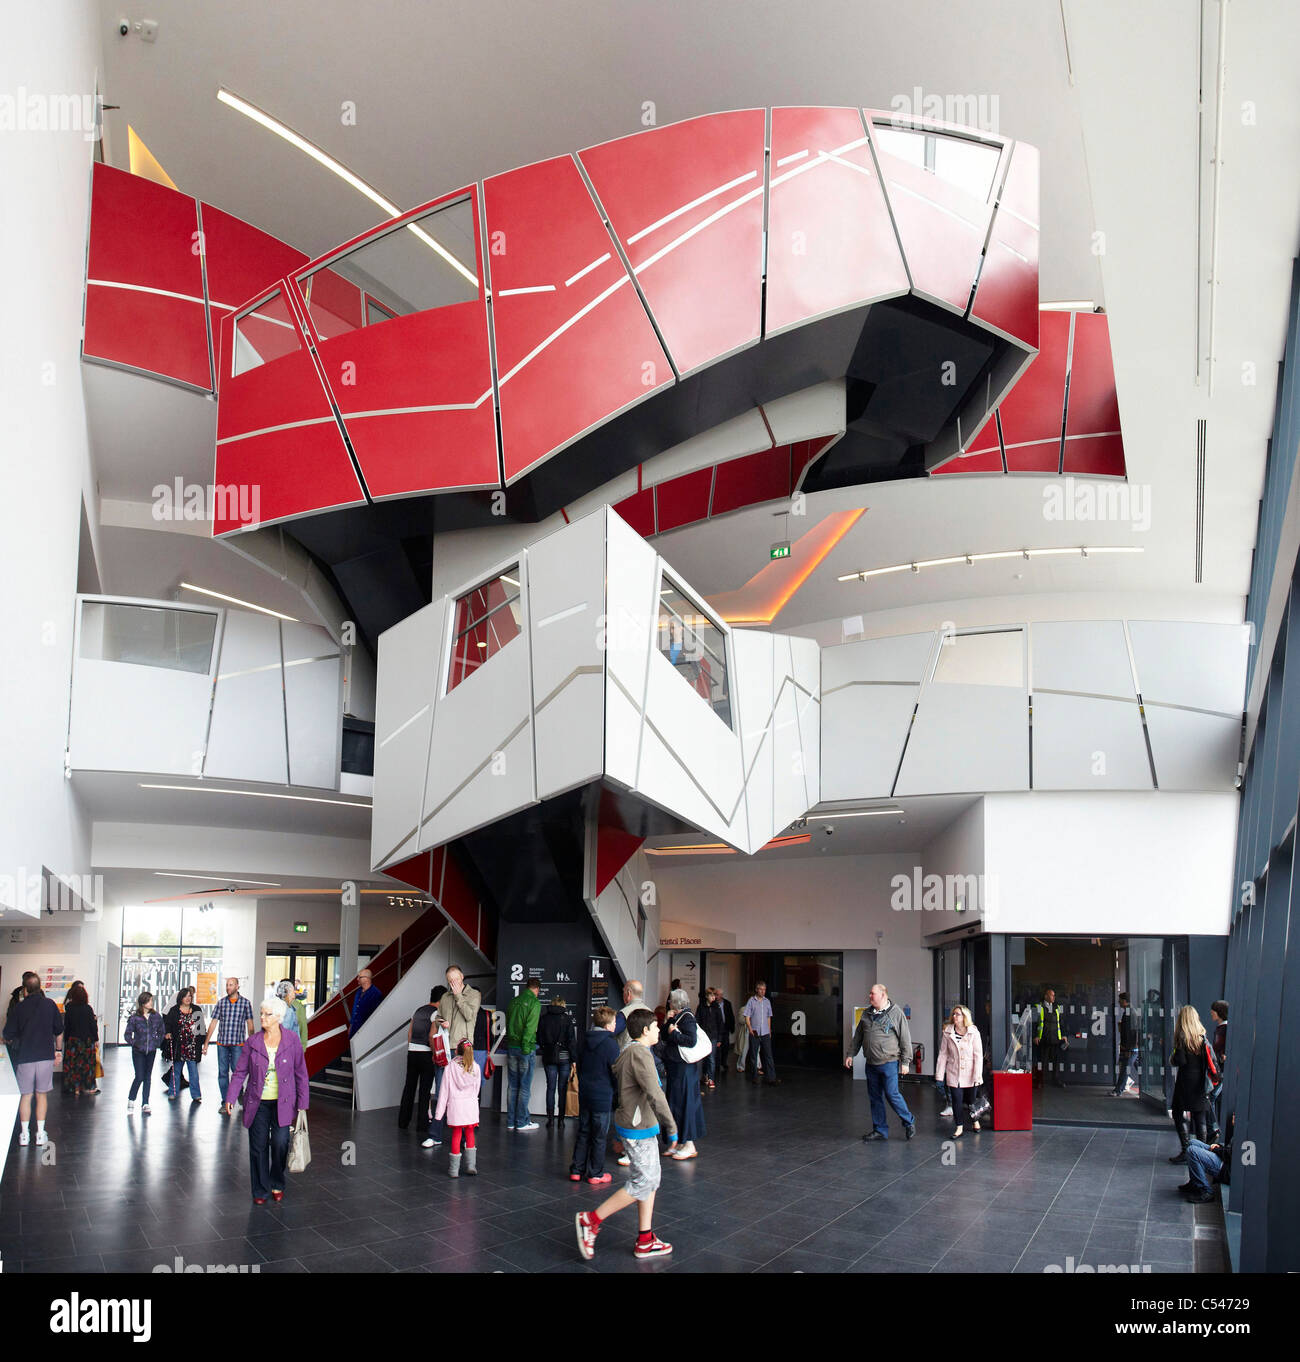 Le nouveau £27 millions de m Shed Museum de Bristol sur l'historique dans le centre-ville de Bristol Harbourside, Avon, Royaume-Uni, Europe Banque D'Images